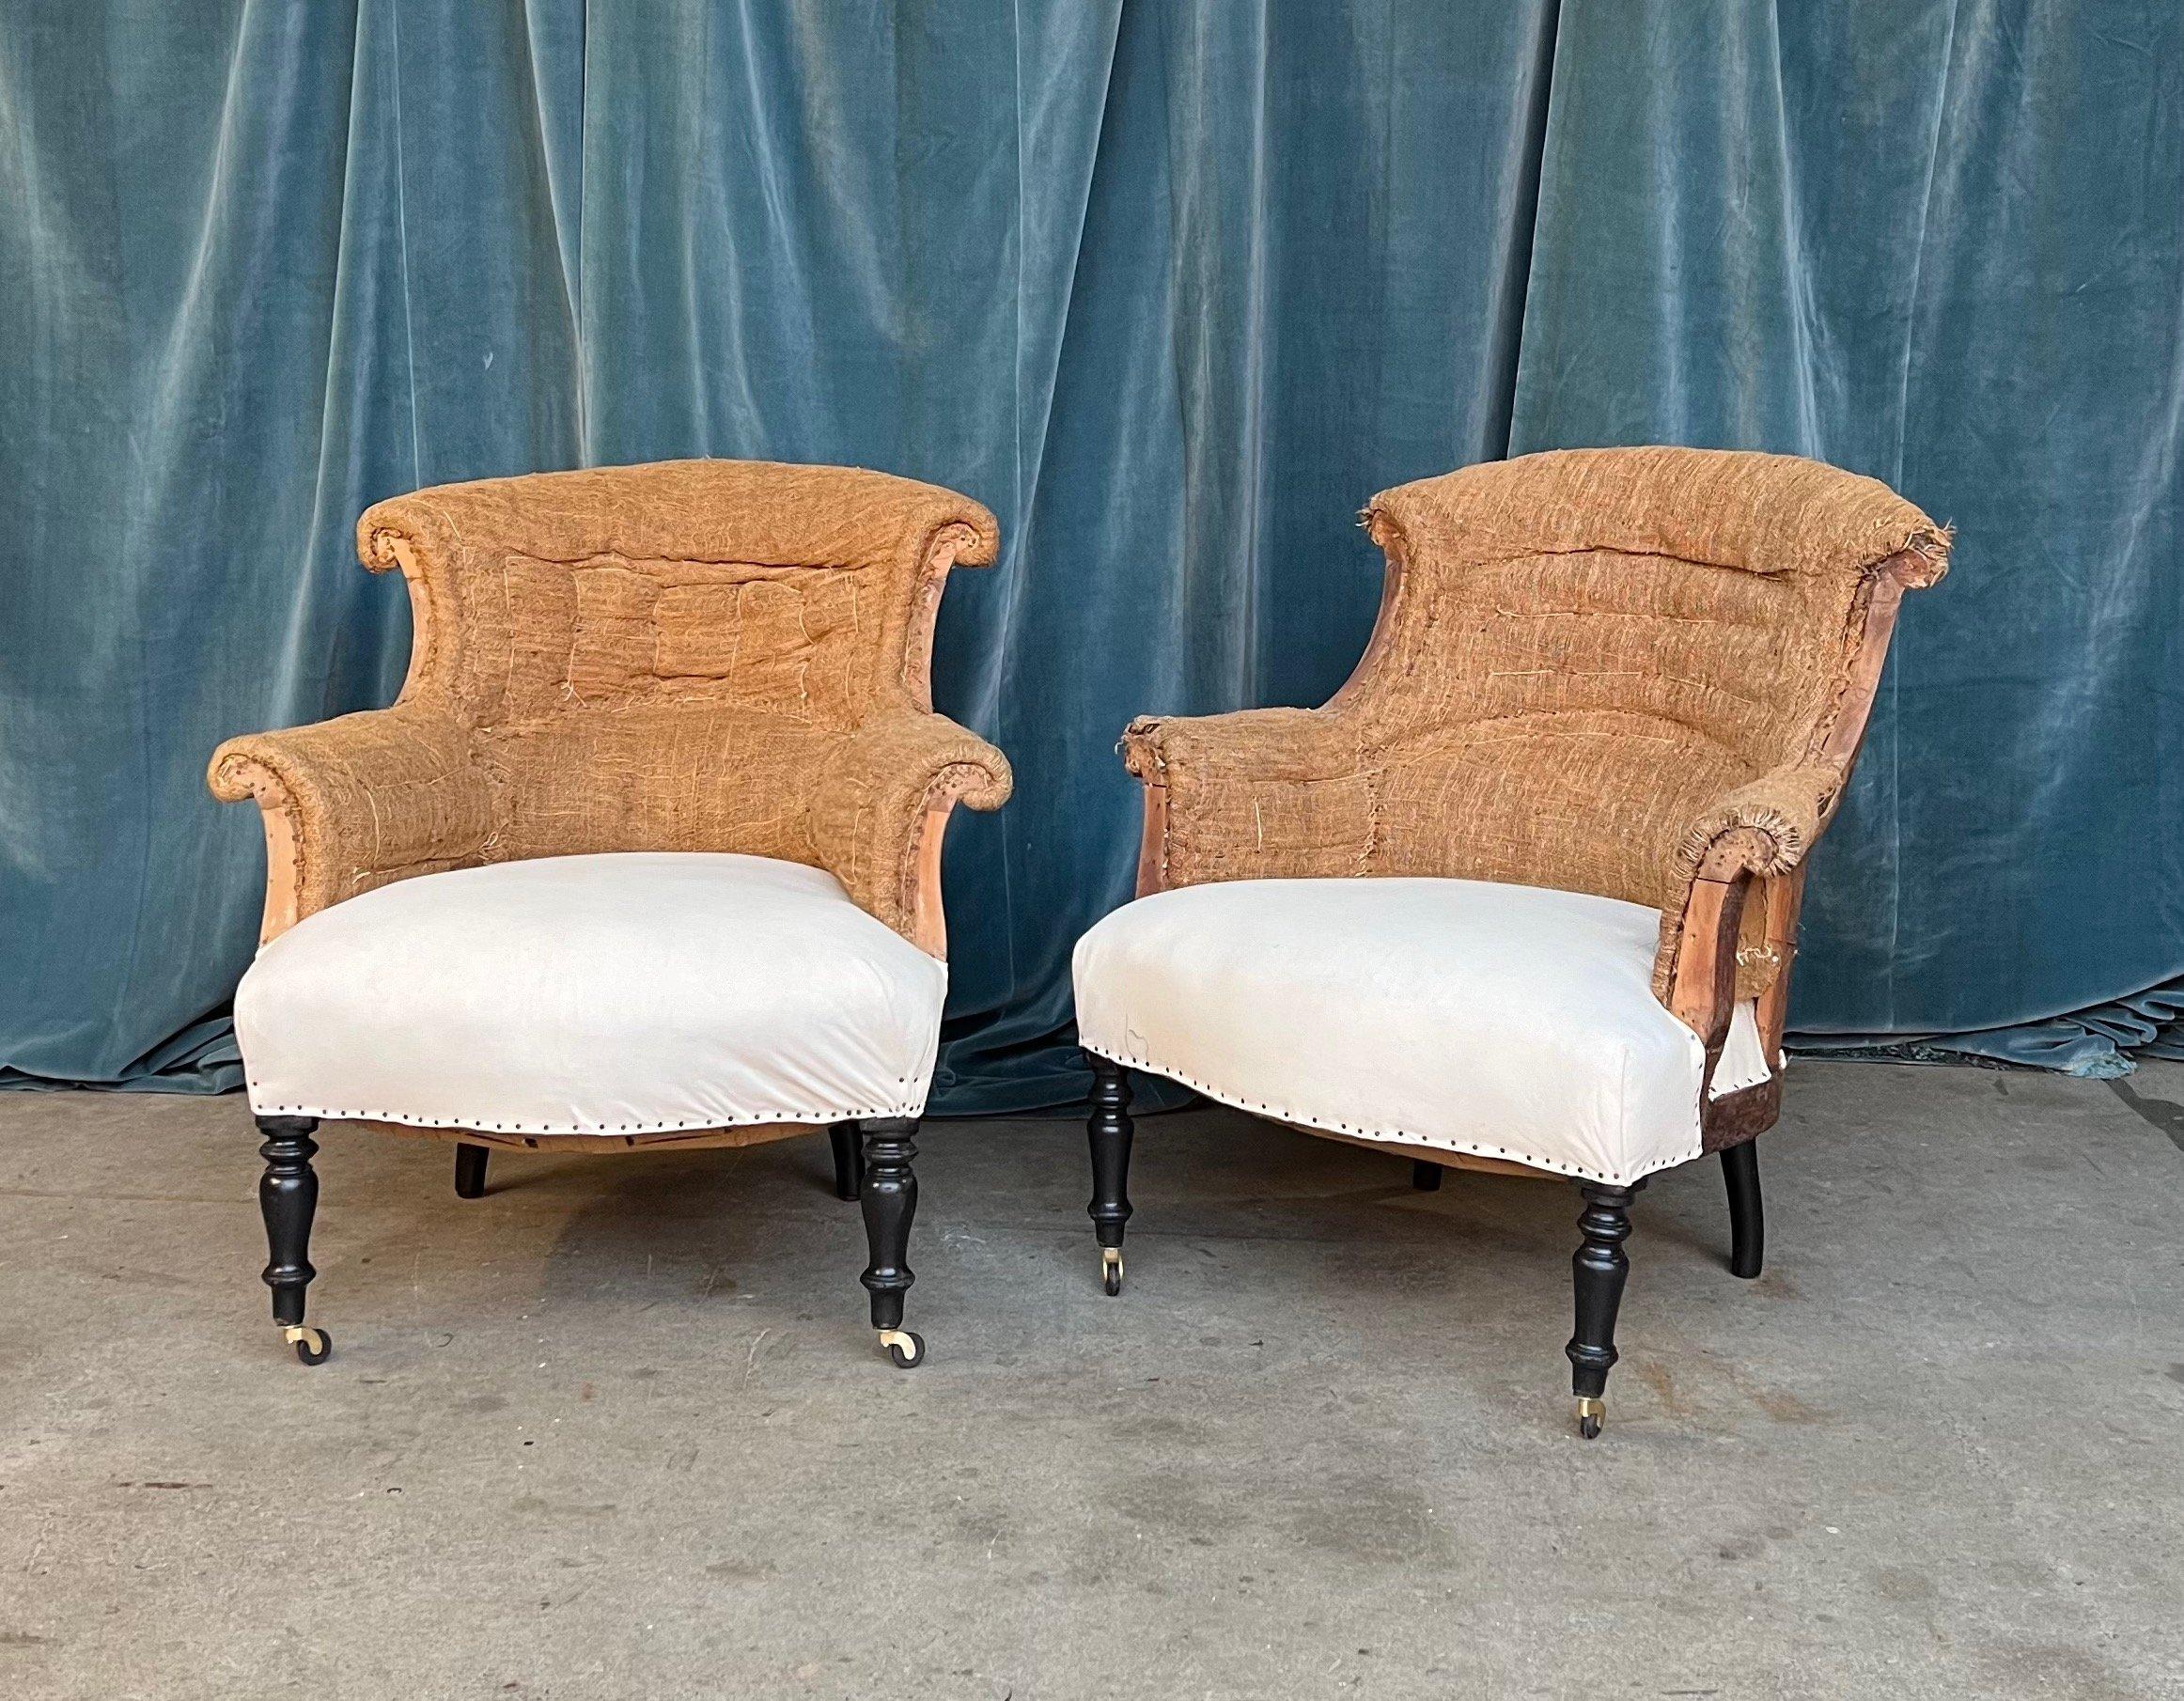 Ein klassisches Paar französischer Napoleon-III-Sessel mit geschwungenen Arm- und Rückenlehnen. Die Stühle wurden bis auf das Sackleinen und die Musselinbespannung abgezogen und sind nun bereit, gepolstert zu werden. Wir haben die vorderen Beine mit